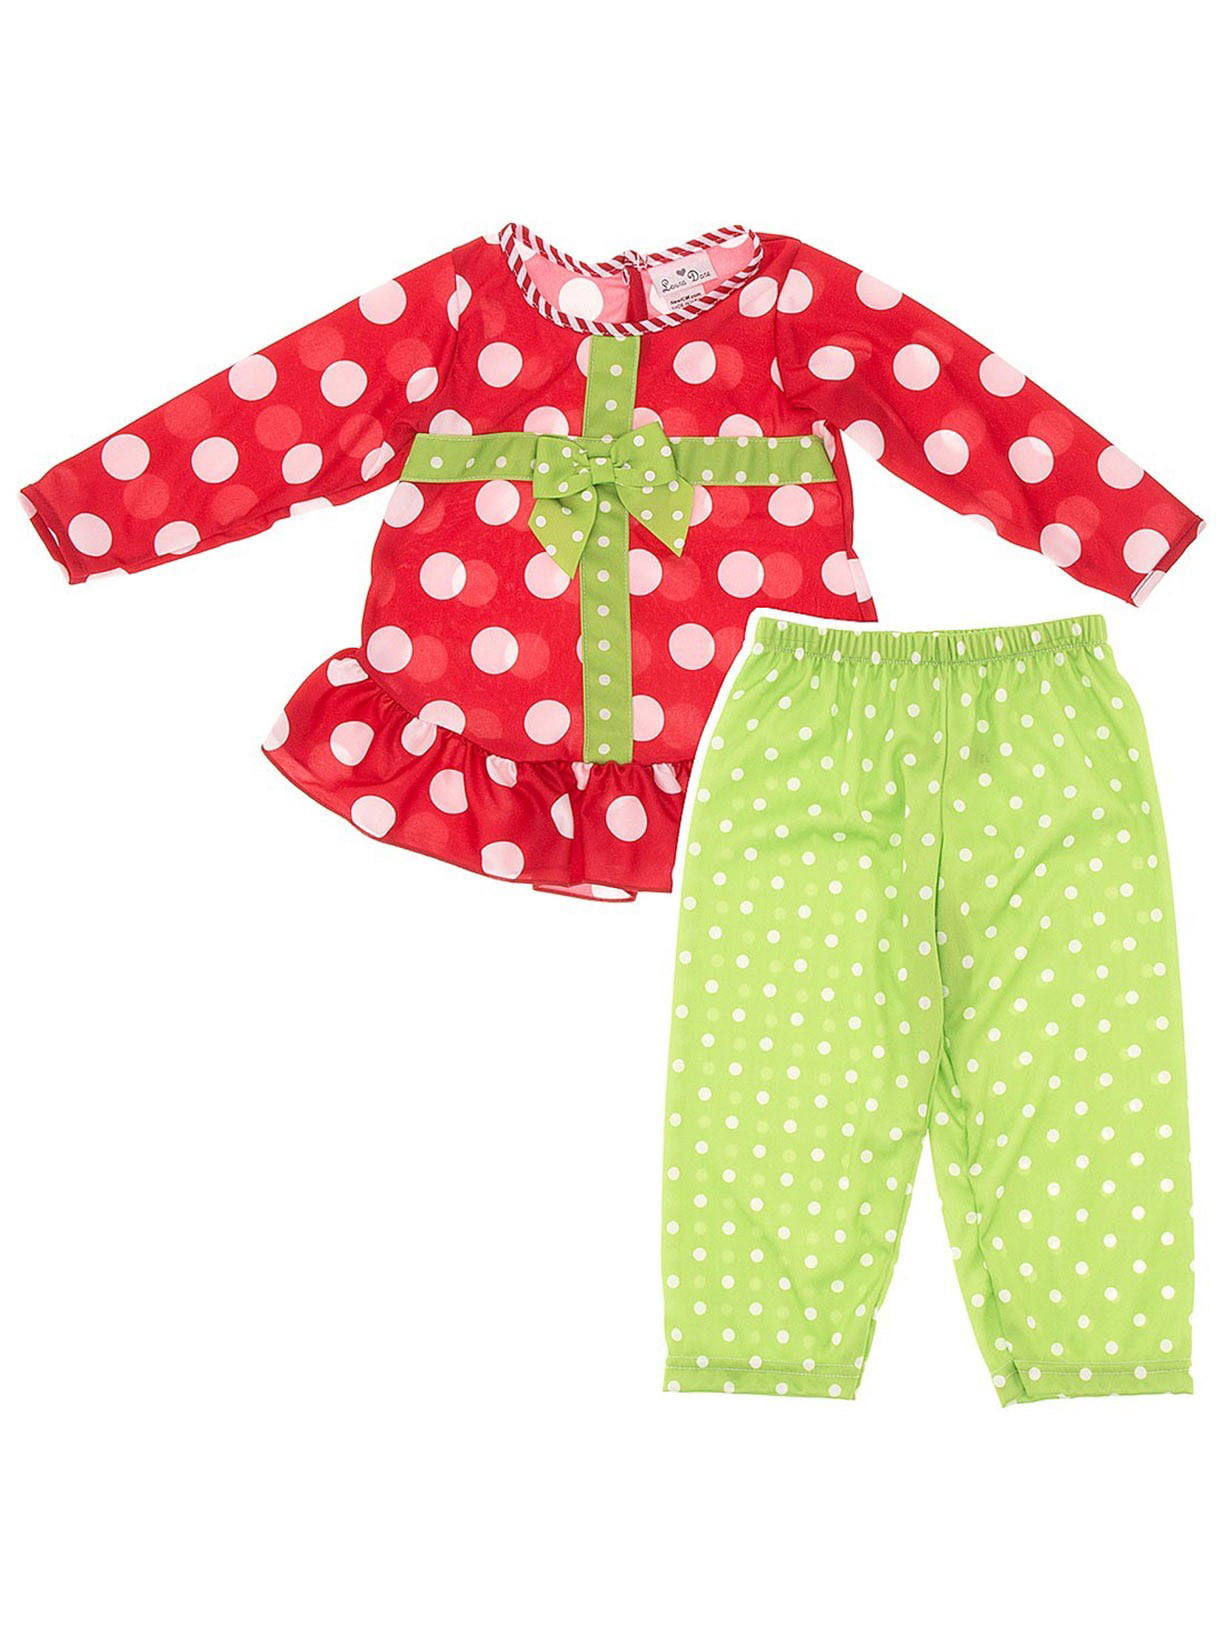 The Elf On The Shelf Polka-Dot Christmas Pajama Pj Set Girl Clothes Size 3t 